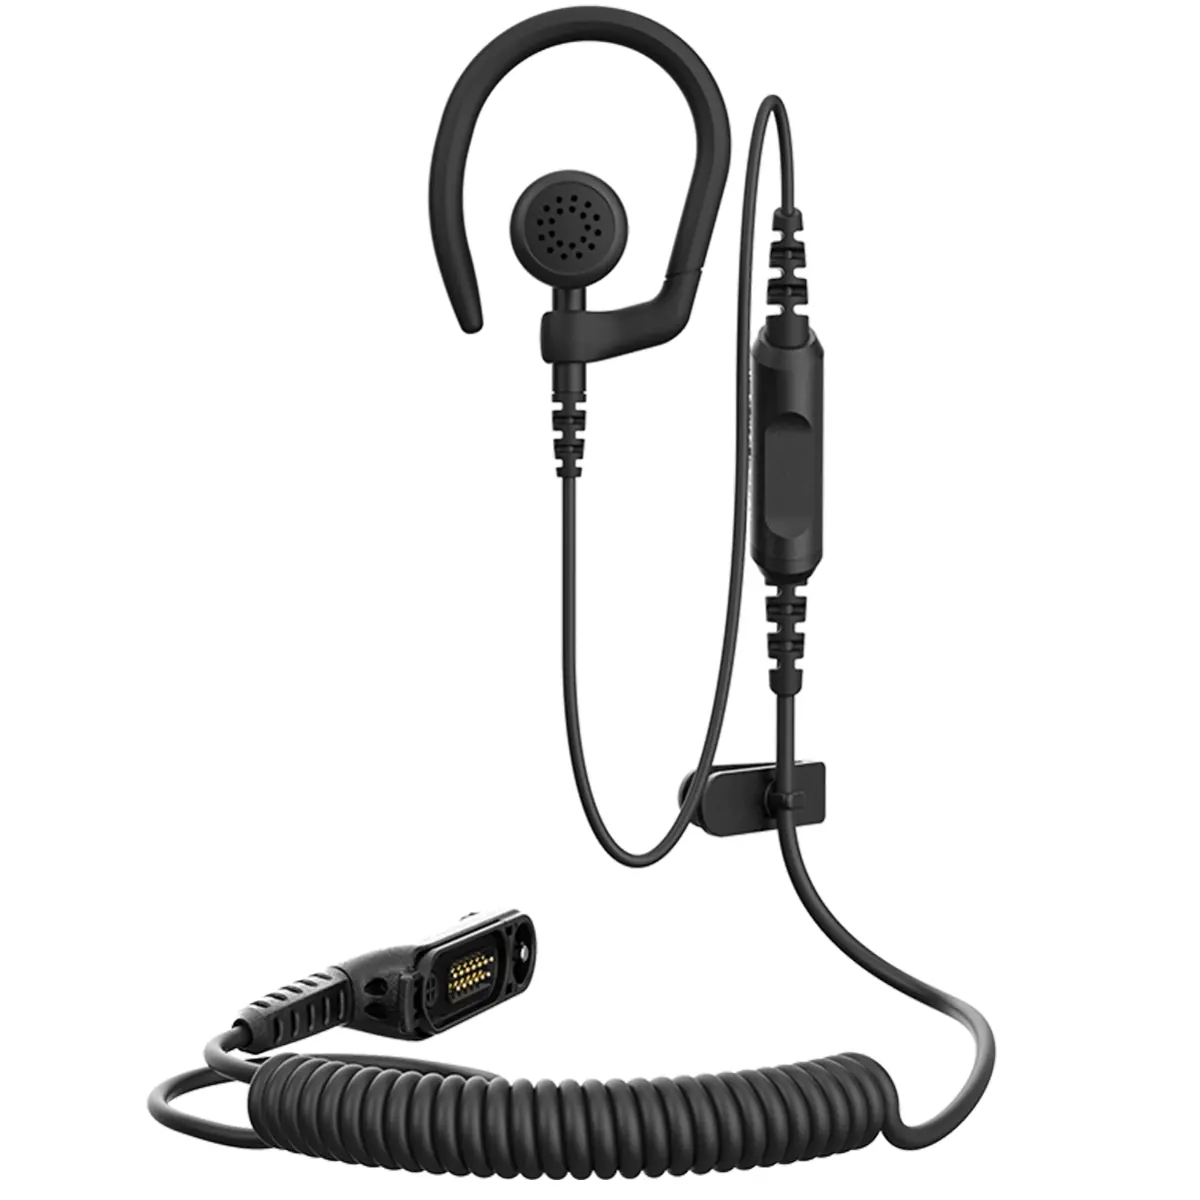 Oreillette confort pour talkie-walkie Motorola R7 - PMLN8337